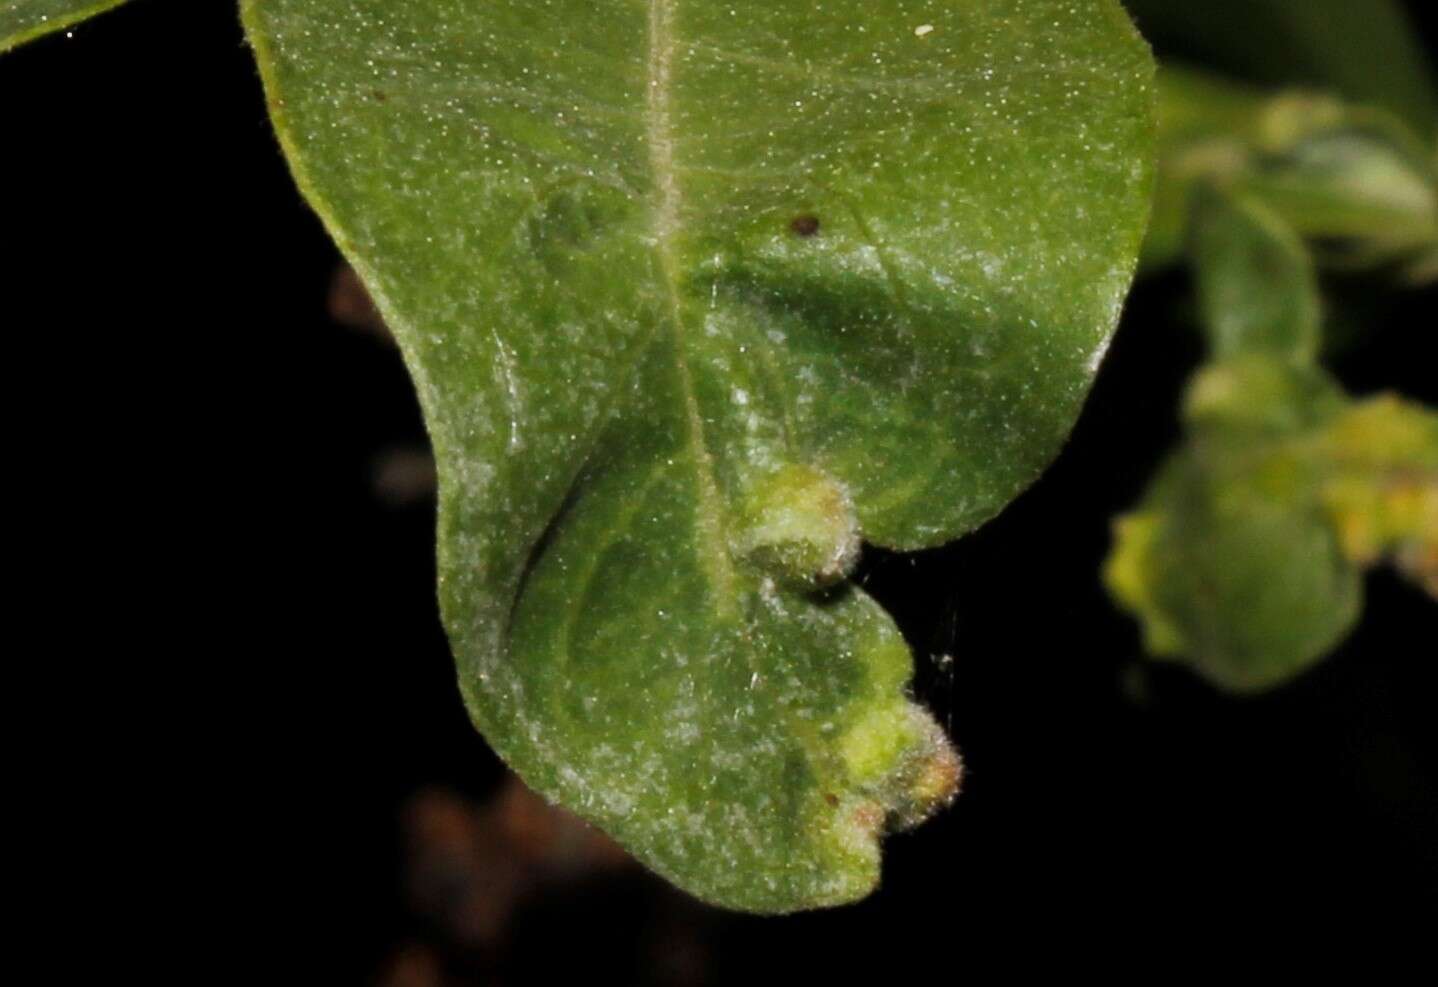 Image of <i>Aceria massalongoi</i>